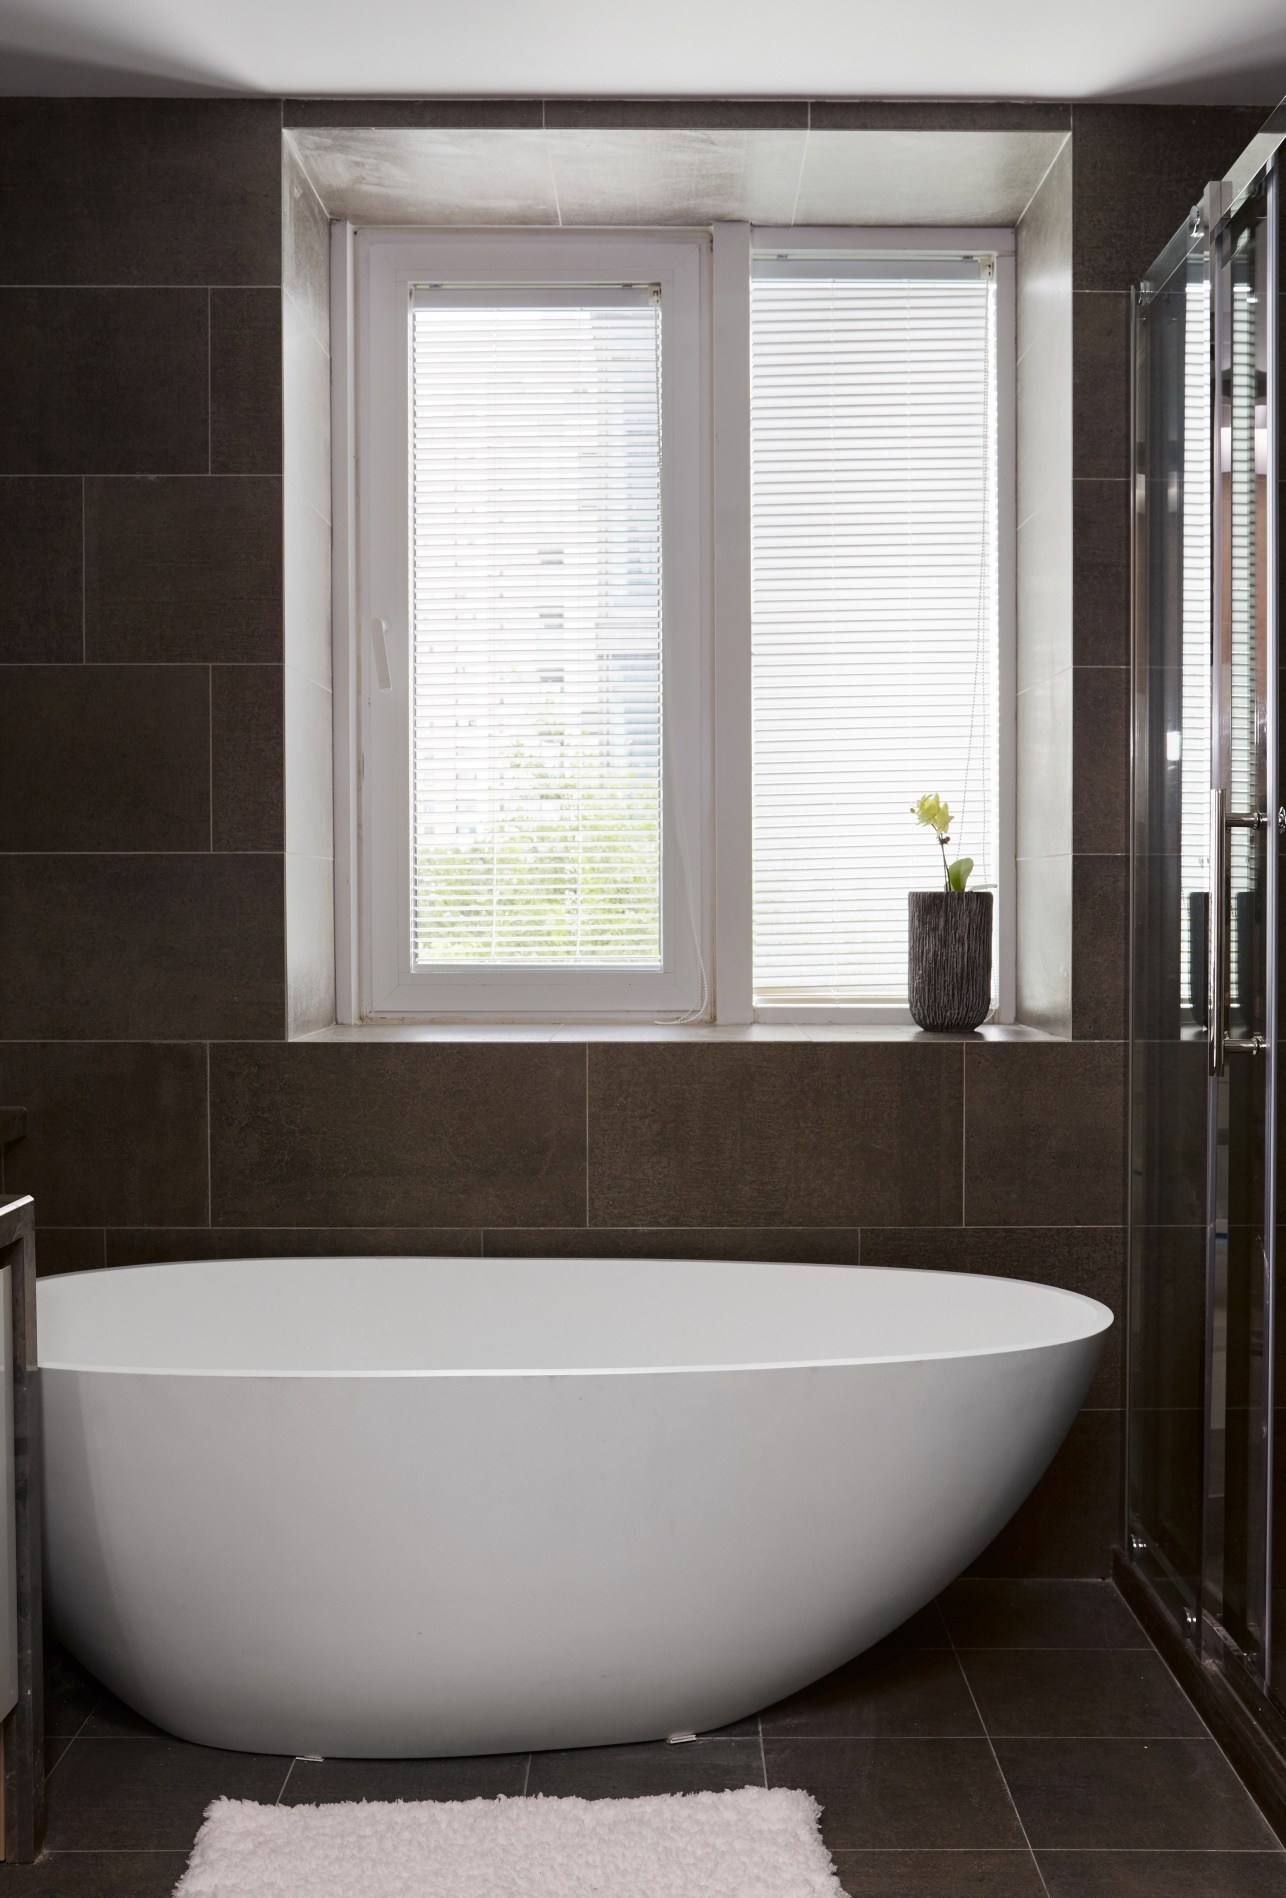 浴缸使用纯白色打造，在咖色氛围中呈现出轻柔灵活气息，凸显主人品质的生活追求。